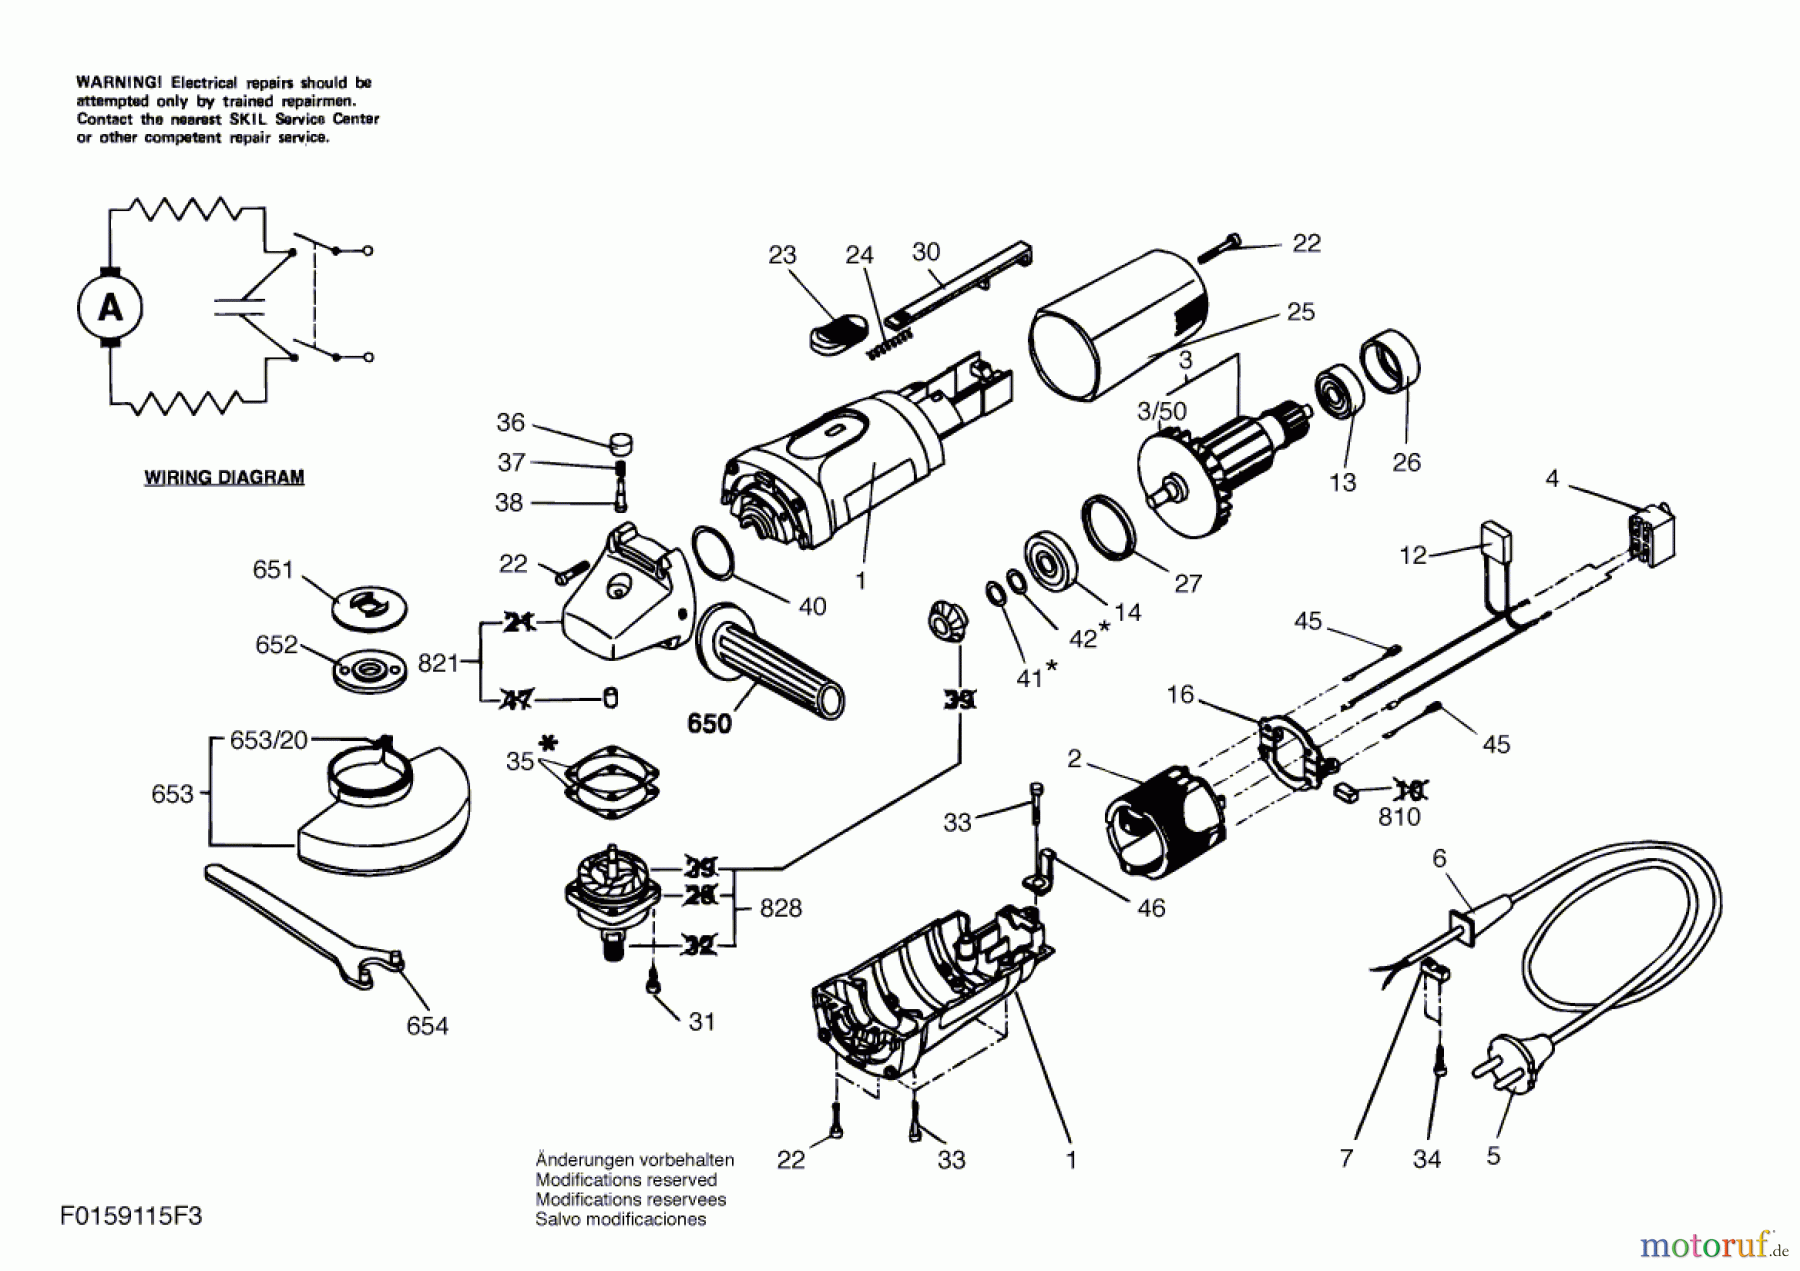  Bosch Werkzeug Winkelschleifer 9115 Seite 1